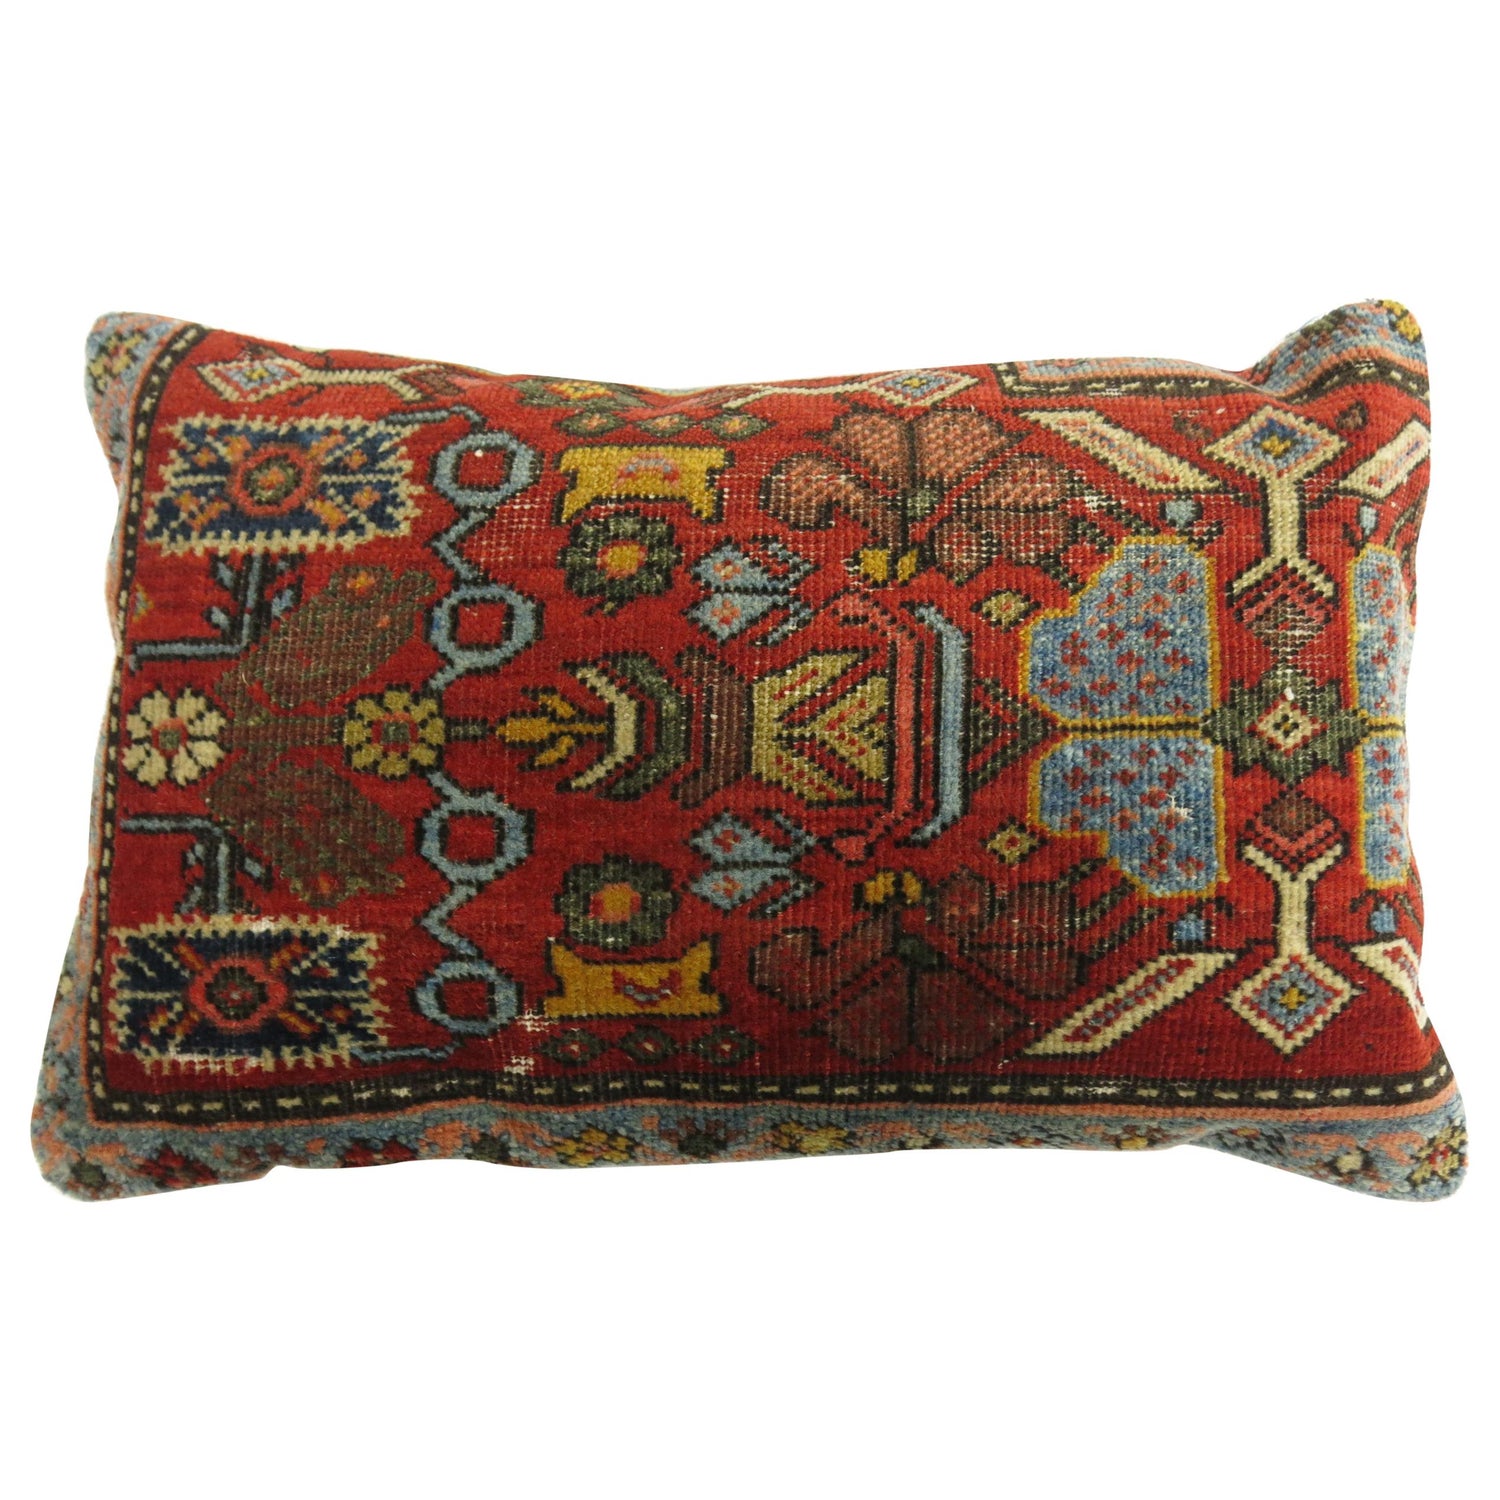 Persian Rug Pillow For At 1stdibs, Persian Rug Cushions